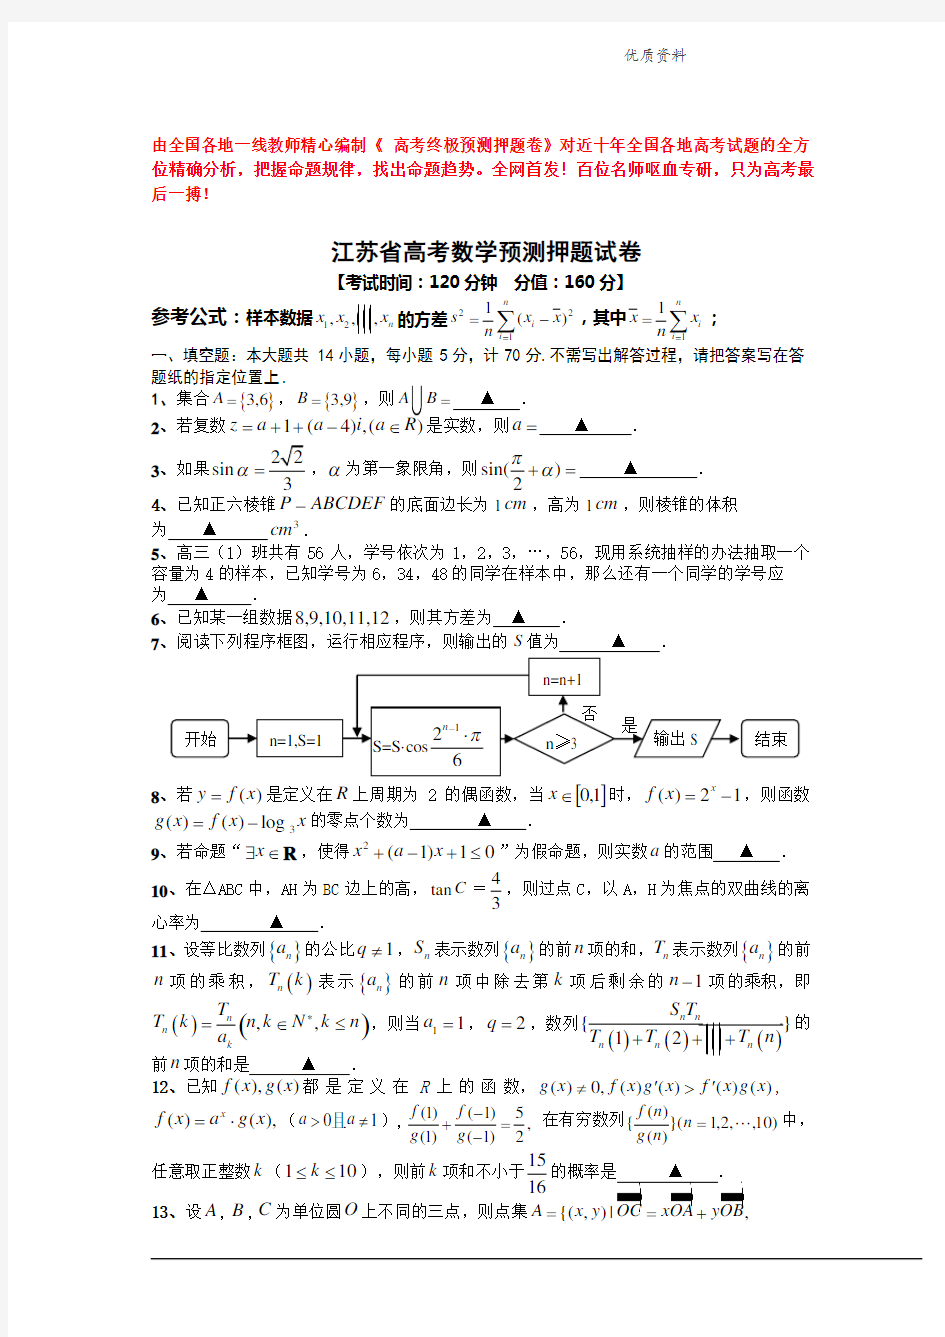 2021年江苏省高考数学预测押题试卷(含附加题及答案) (2).doc